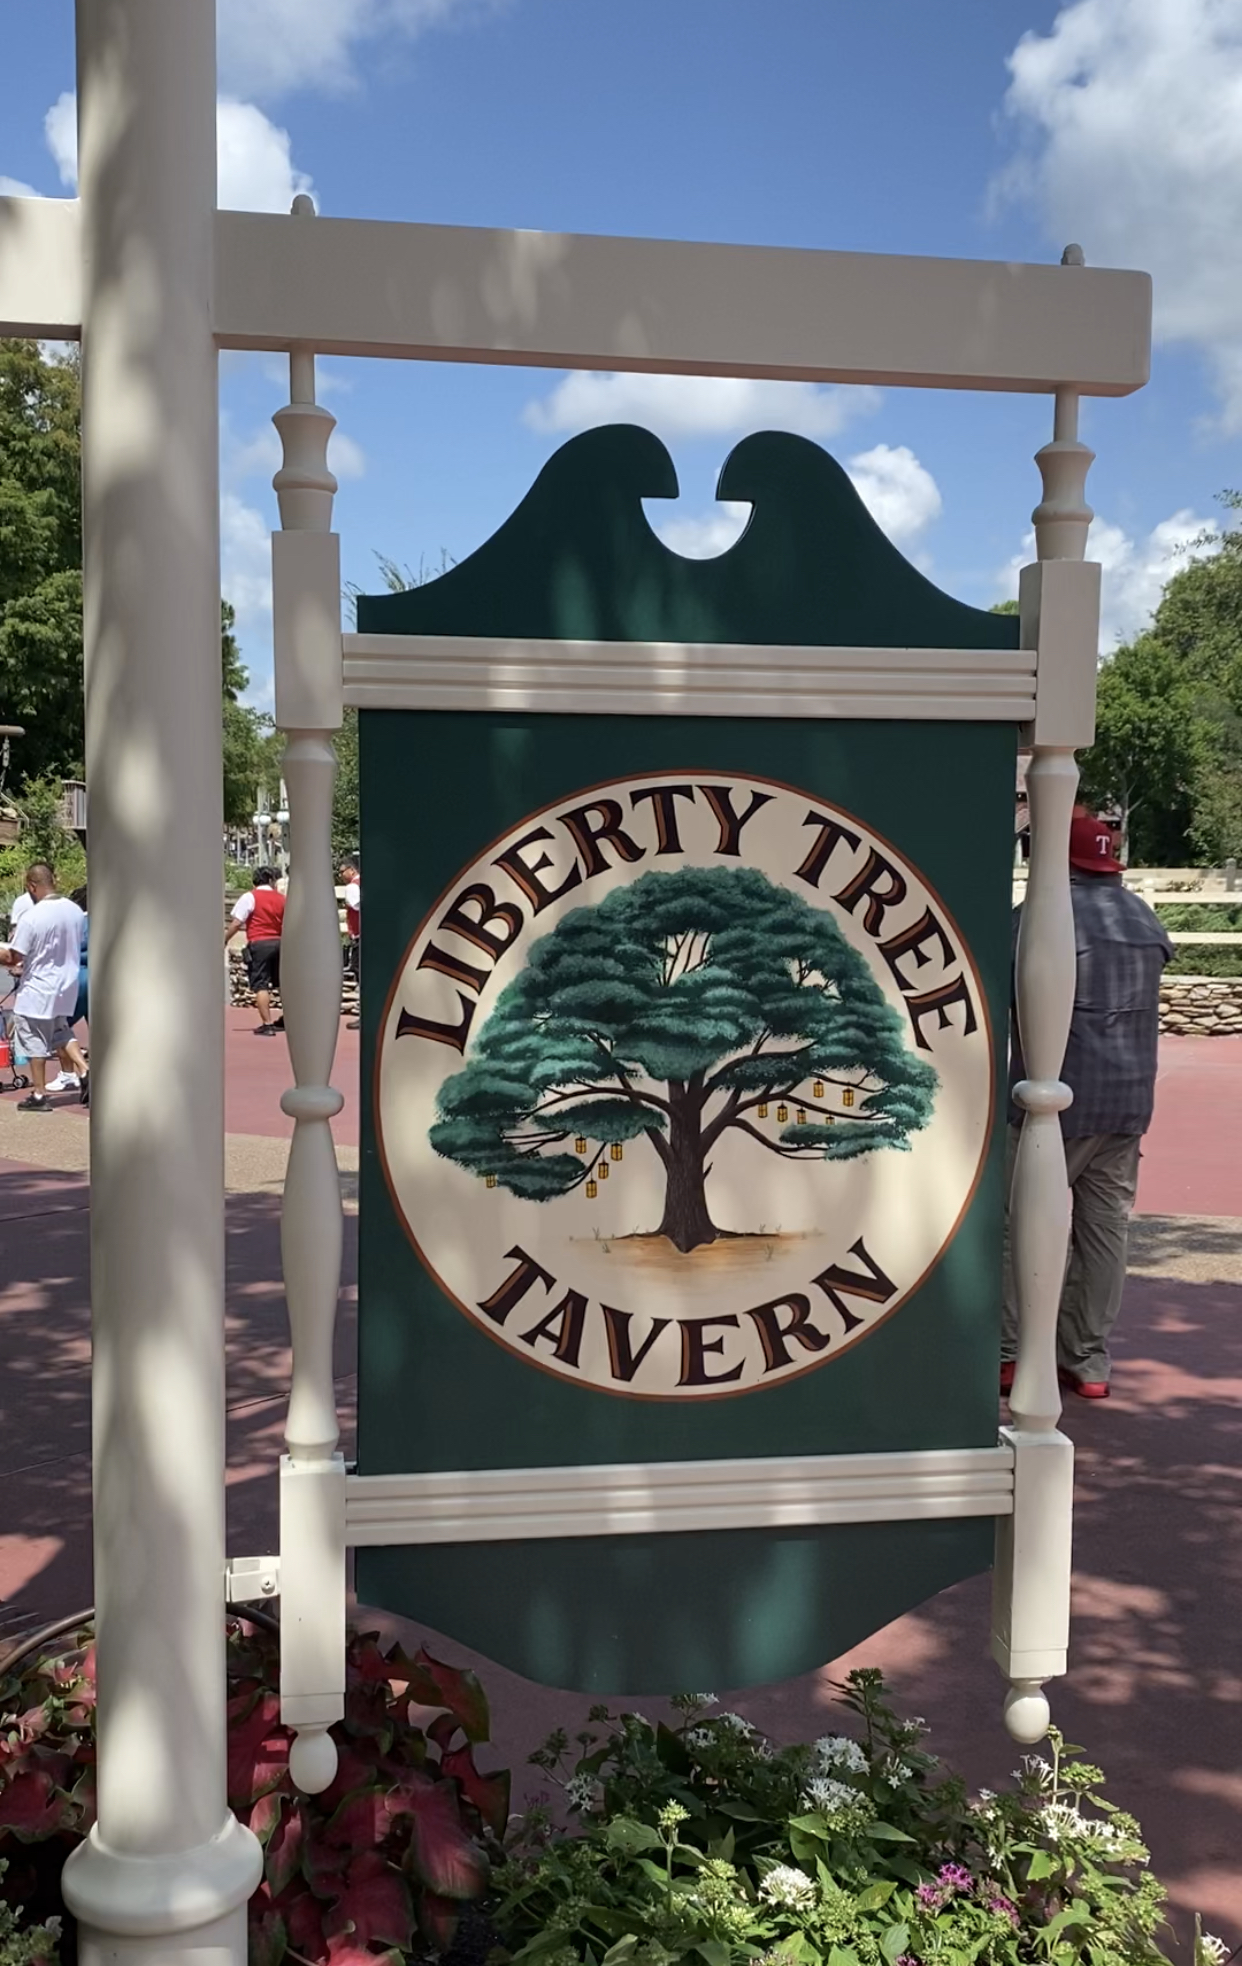 Magic Kingdom's Liberty Tree Tavern